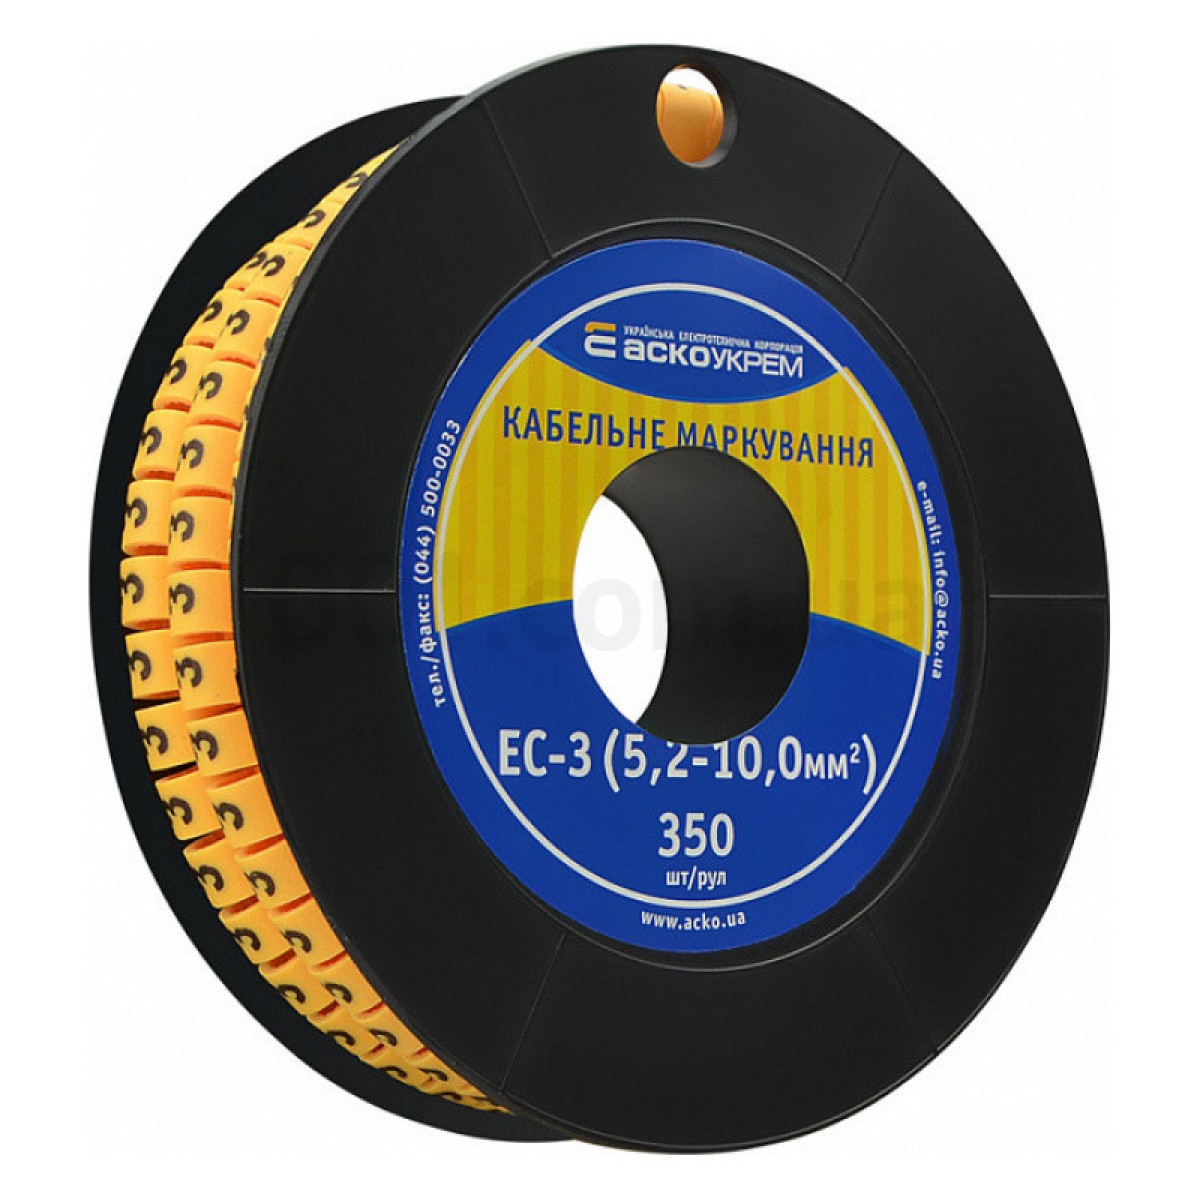 Маркировка EC-3 для кабеля 5,2-10,0 мм² символ «3» (рулон 250 шт.), АСКО-УКРЕМ 256_256.jpg